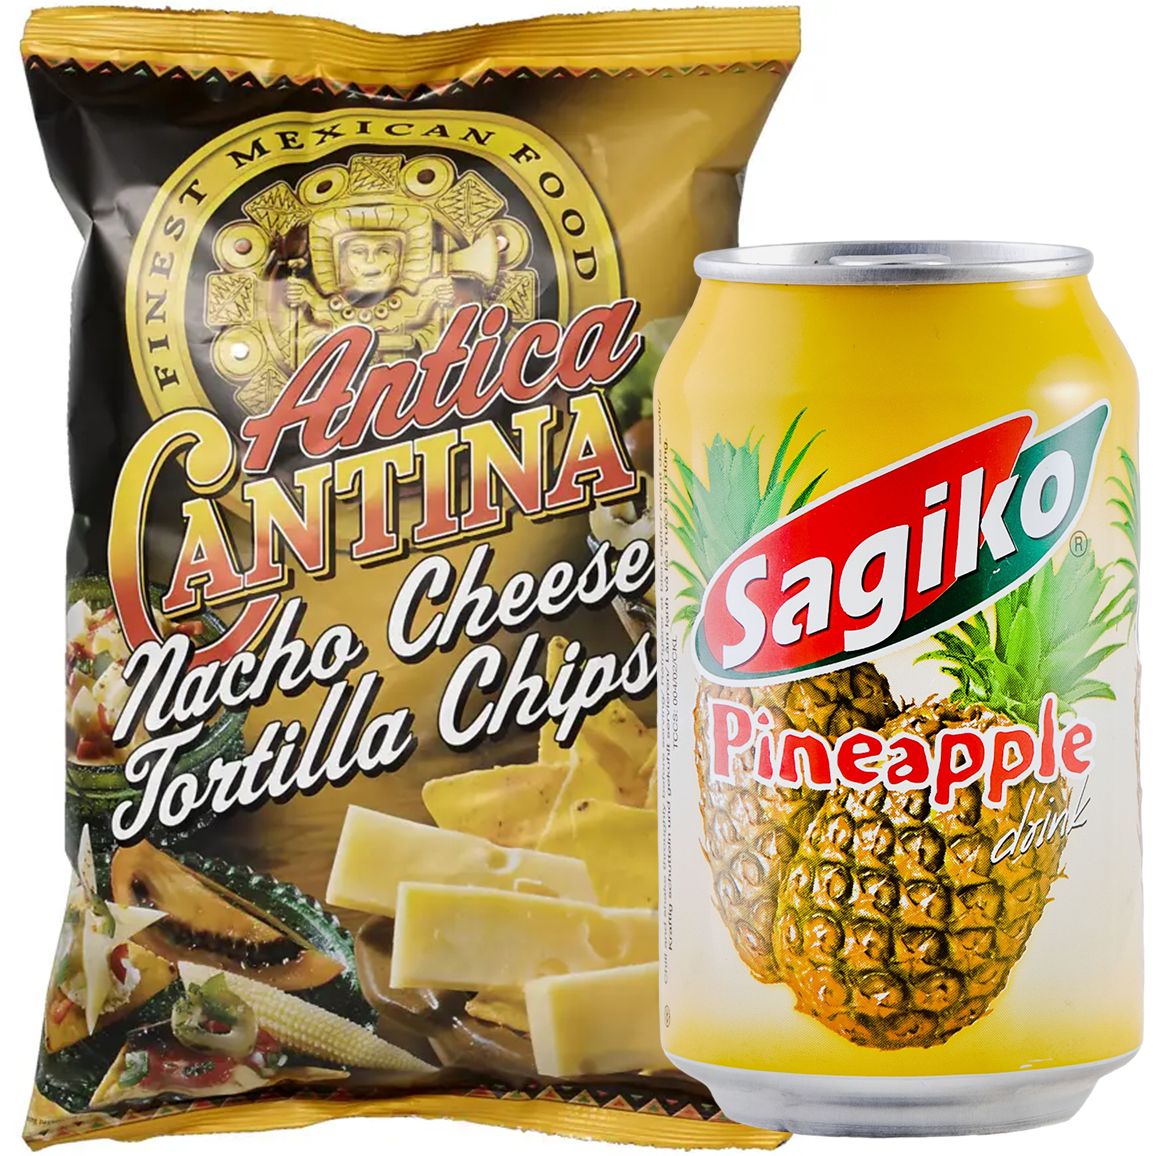 Набор: кукурузные чипсы Antica Cantina Начос Сырные 200 г + напиток Sagiko Pineapple drink Ананас 320 мл - фото 1